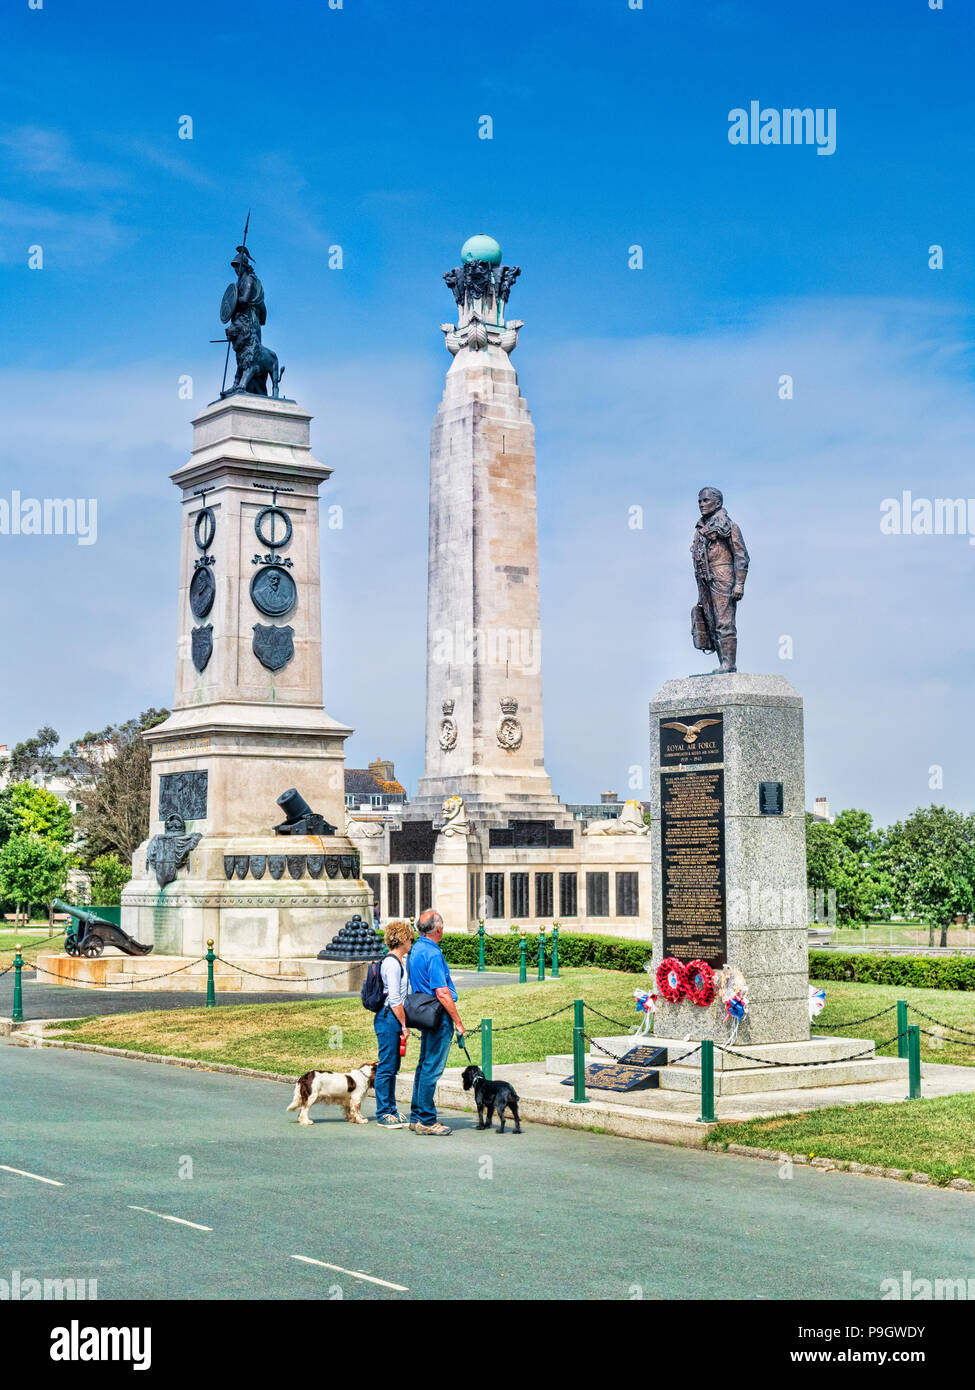 8 juin 2018 : Plymouth, Devon UK - Couple avec deux chiens à la recherche de monuments à Plymouth Hoe - de gauche à droite, l'Armada Monument, la Royal Navy Monum Banque D'Images